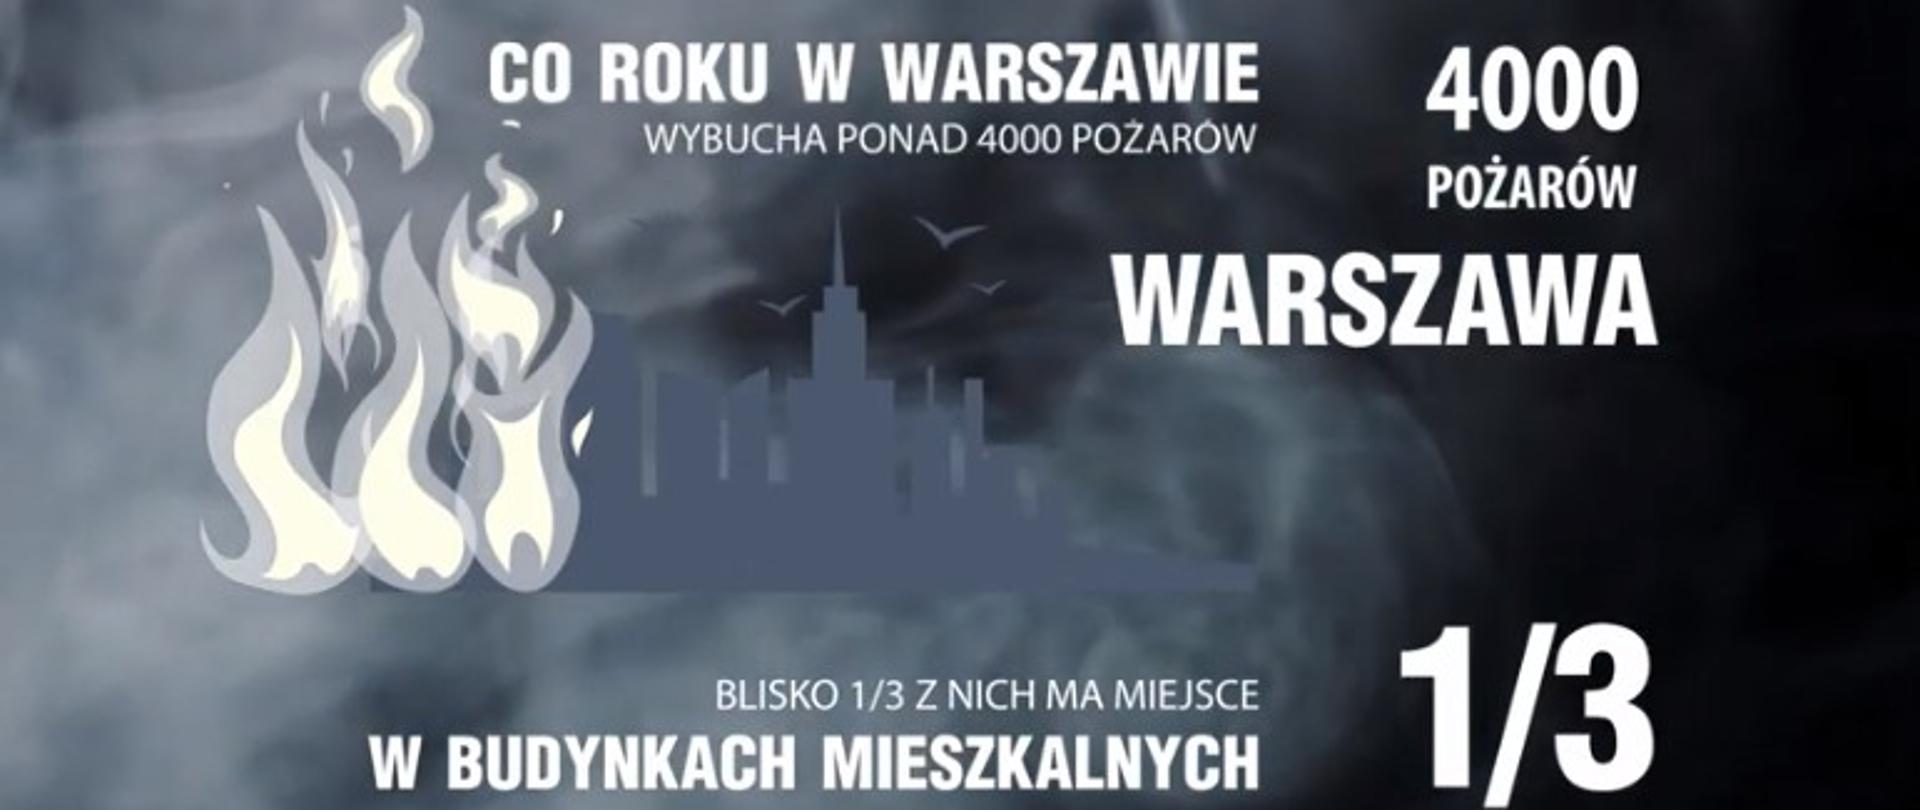 Grafika przedstawia ciemne kontury budynków Warszawy, okryte szarym dymem. Na pierwszym planie jasne płomienie i napisy statystyczne: Co roku w Warszawie wybucha ponad 4000 pożarów. Blisko jedna trzecia z nich ma miejsce w budynkach mieszkalnych.